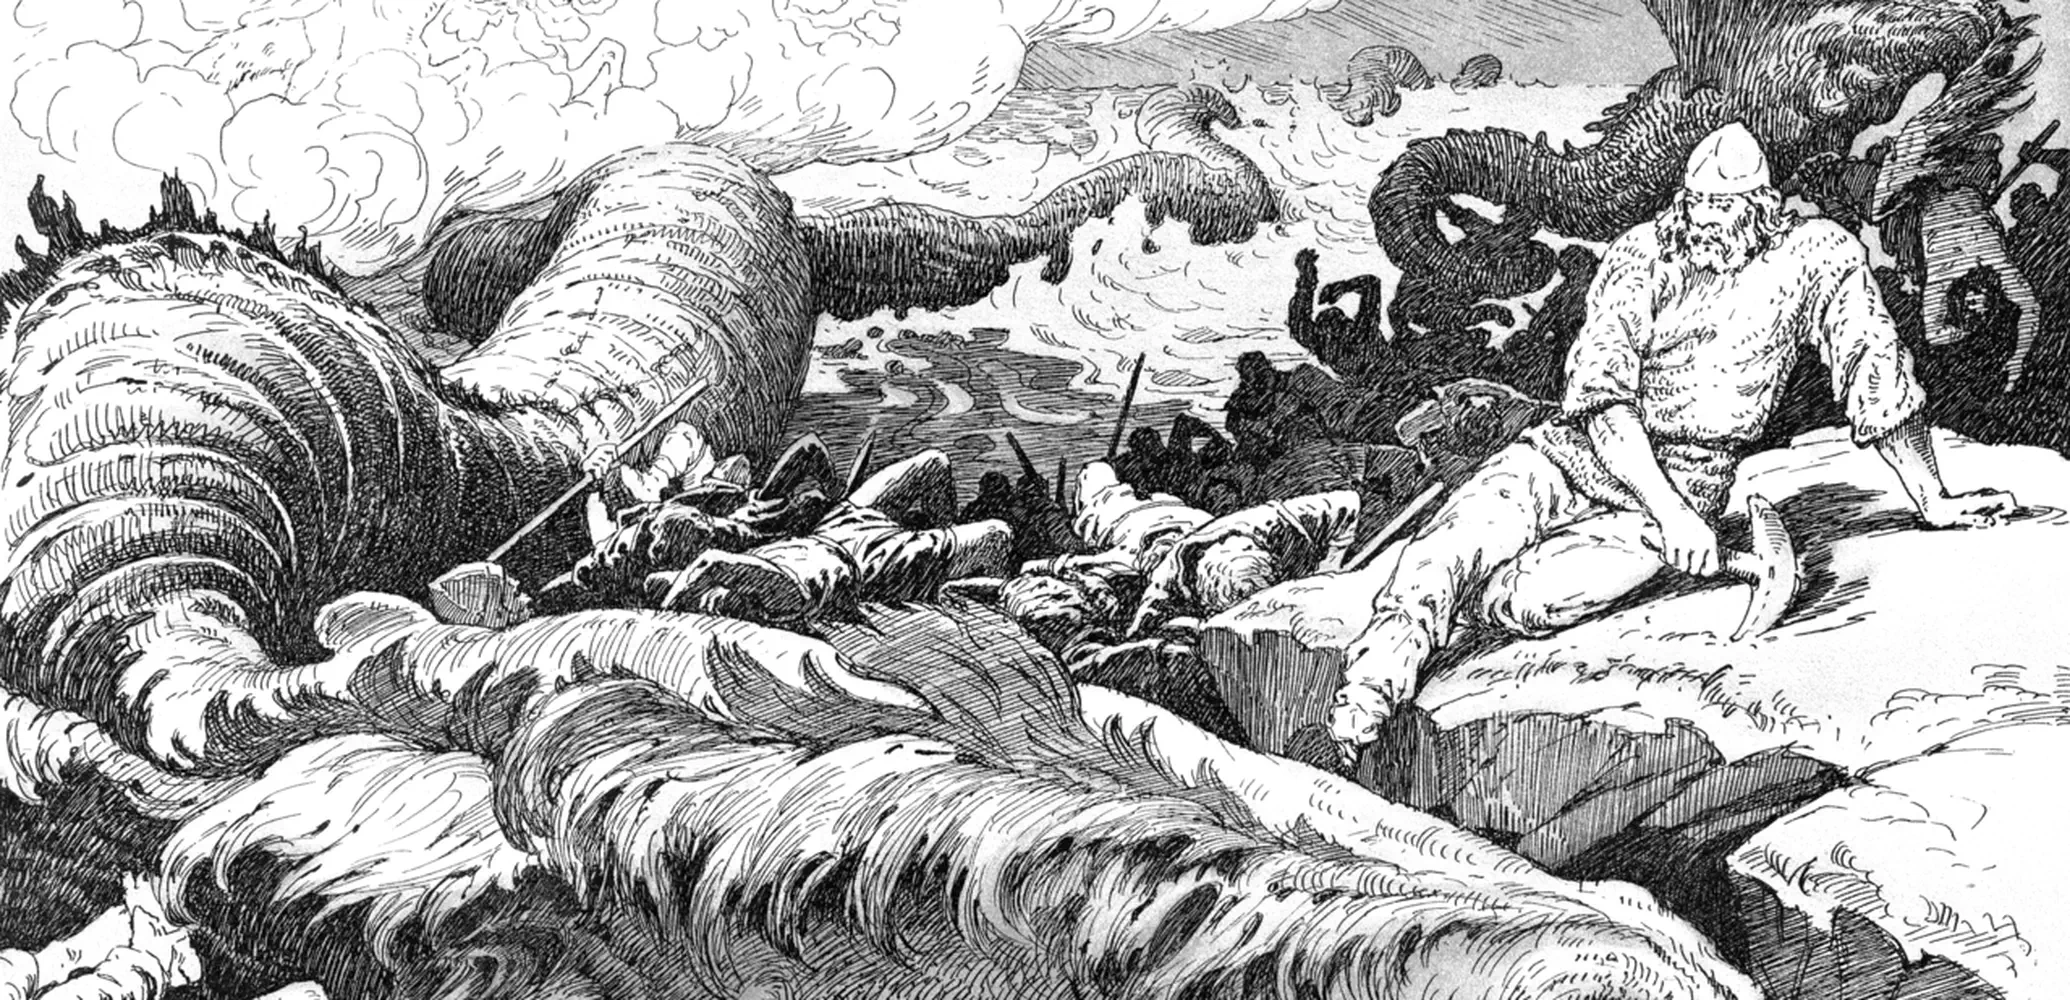 Jörmungandr roert zijn staart in de wereldzee tijdens Ragnarök, het einde der tijden volgens de Noordse mythologie. Tekening van Louis Moe, 1898.